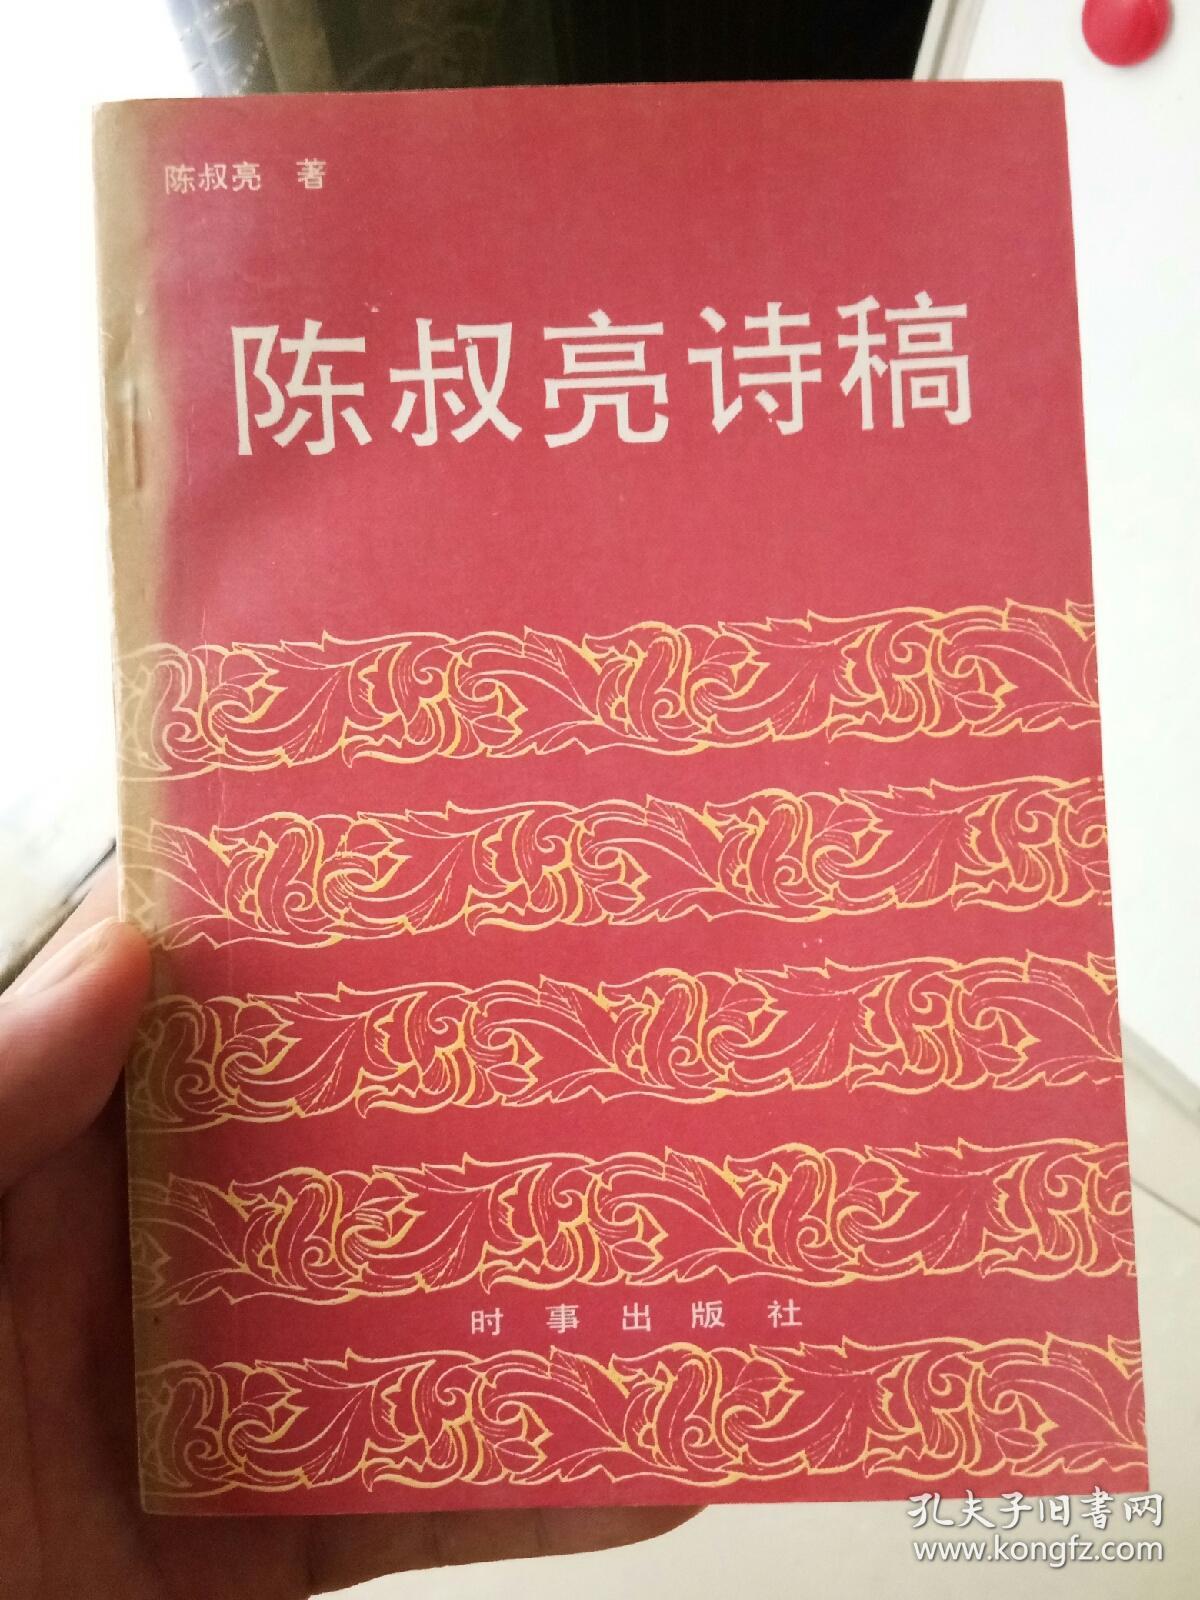 已故北京书画名家 陈叔亮 签名本《陈叔亮诗稿》1989年初版 32开 基本全新